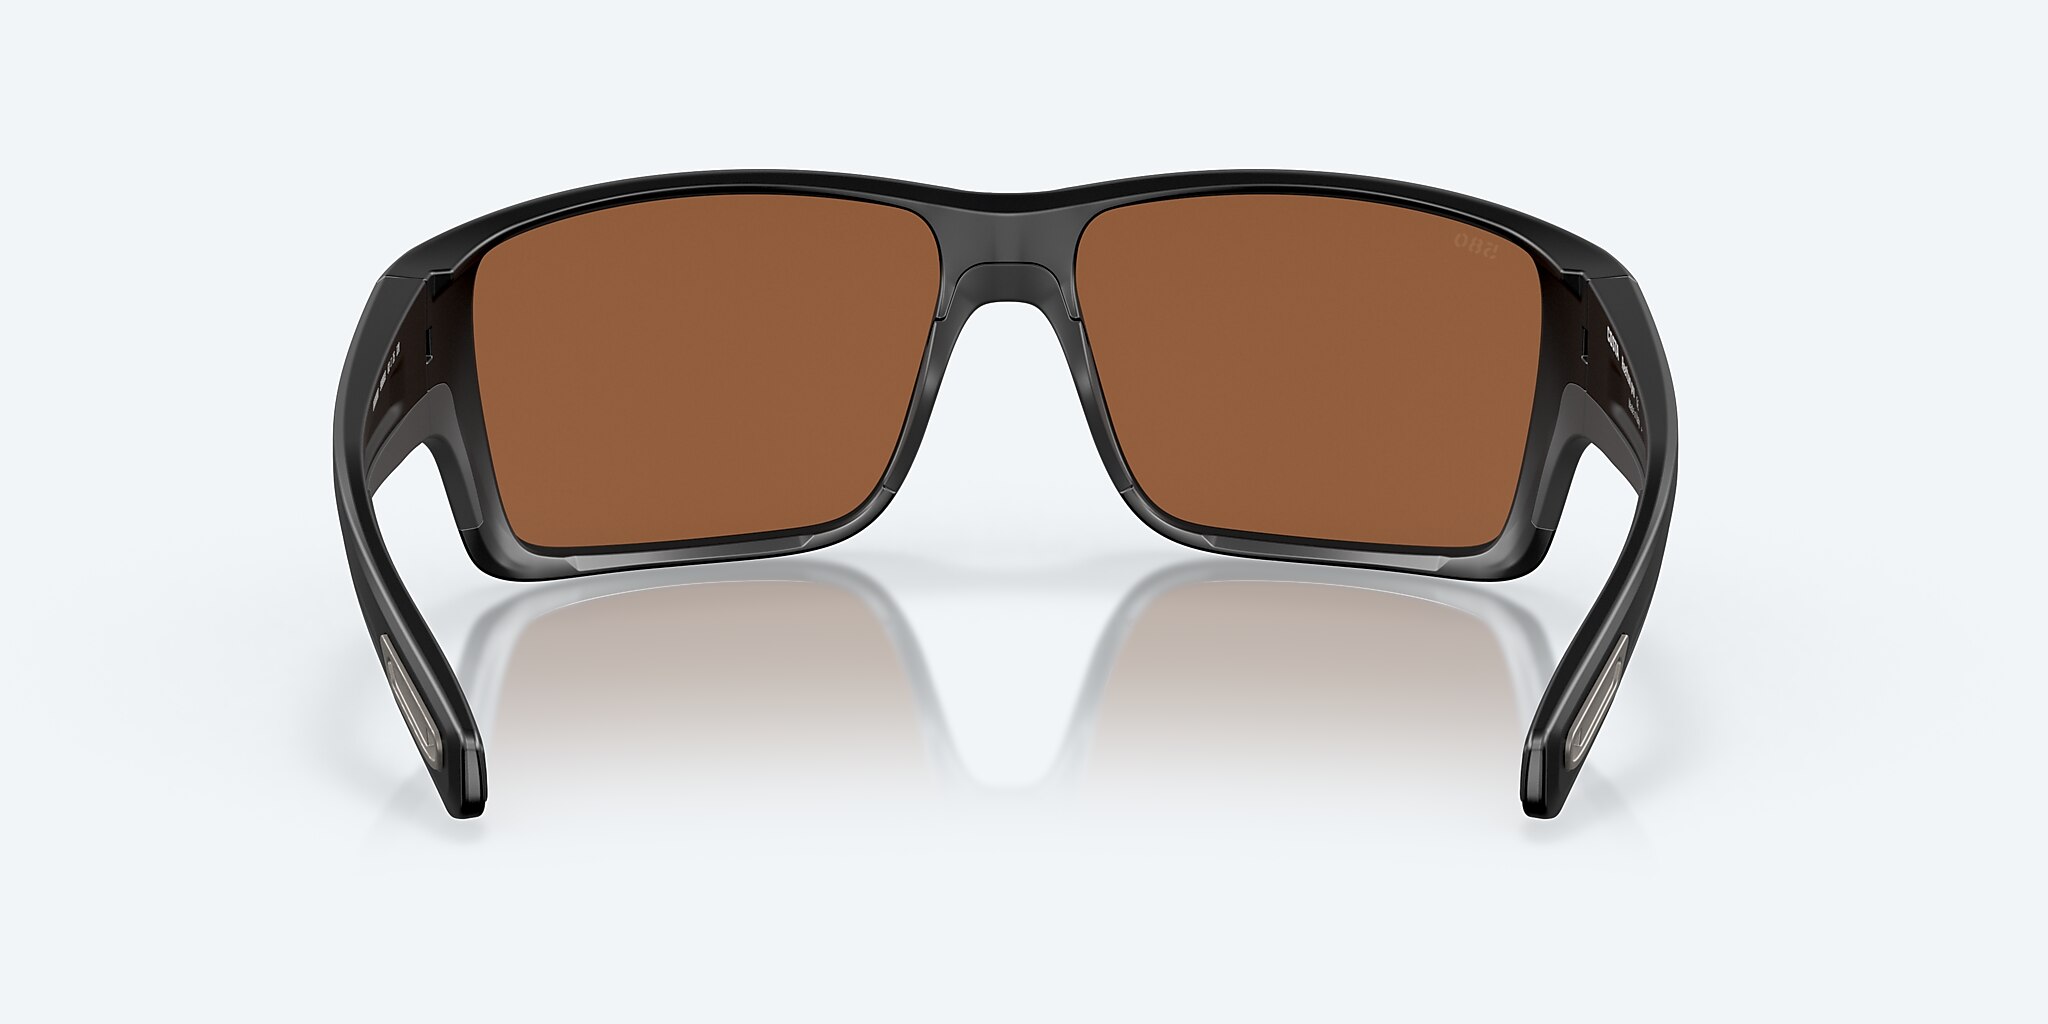 Reefton PRO Polarized Sunglasses Mirror Costa in Mar® Copper Silver | Del